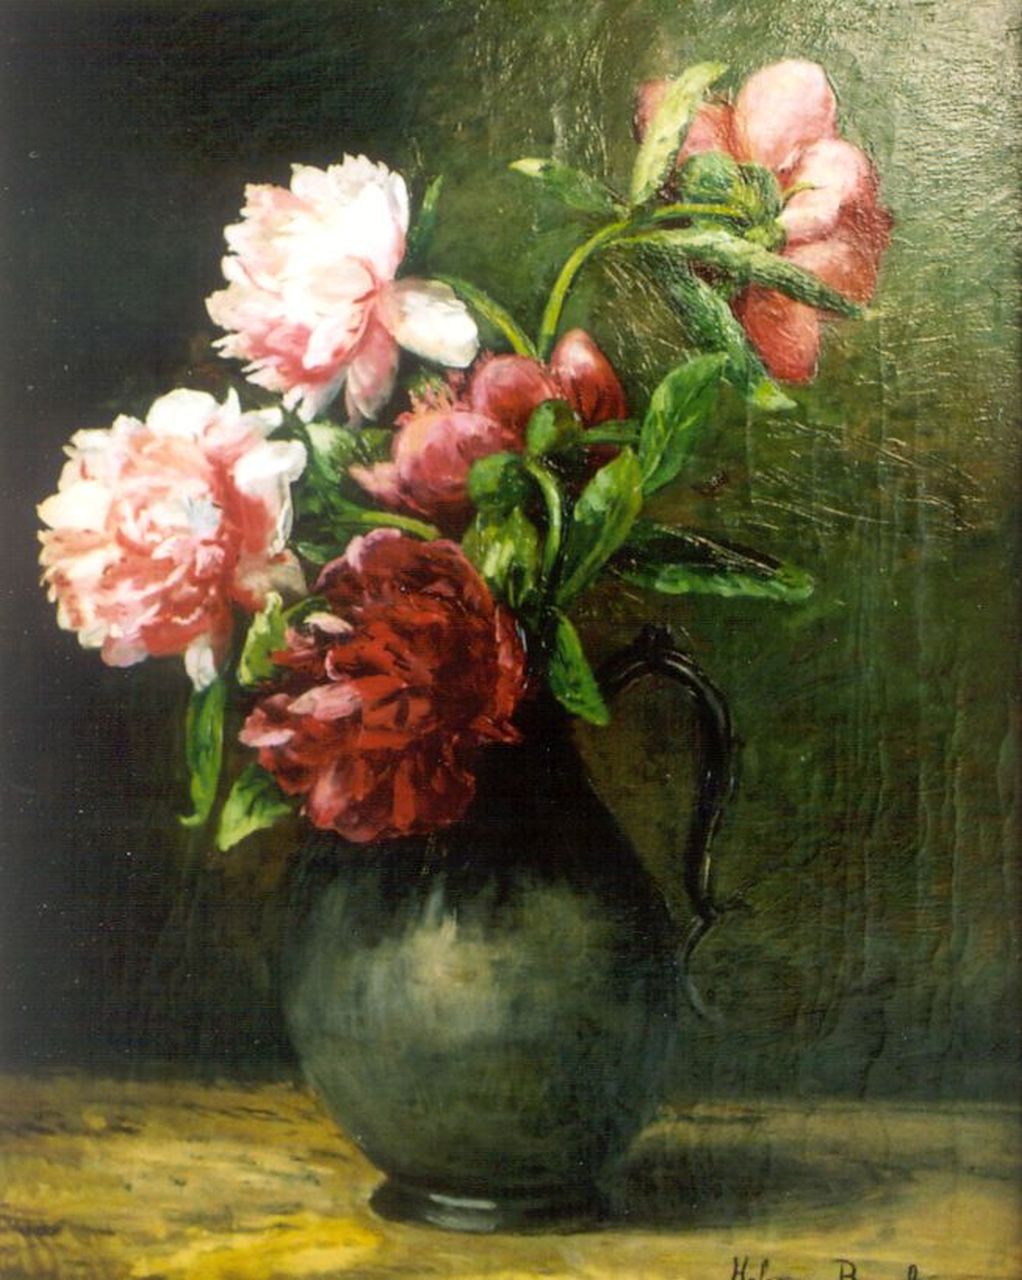 Borselen H.M. van | Helena Maria van Borselen, A flower still life, oil on canvas 40.0 x 60.0 cm, signed l.r.